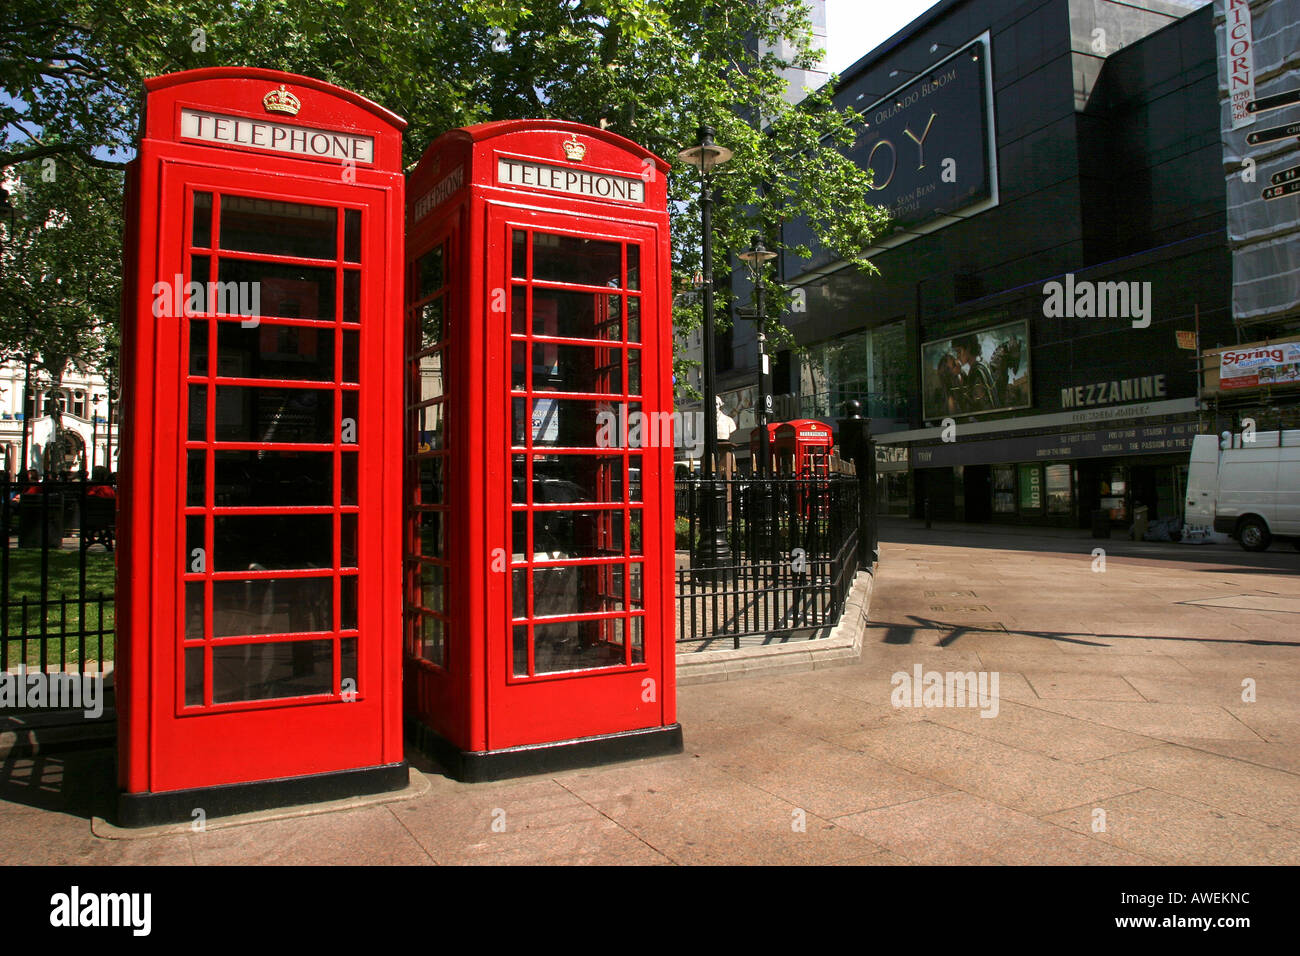 London Leicester Square K6 caselle telefono e cinema Odeon Foto Stock